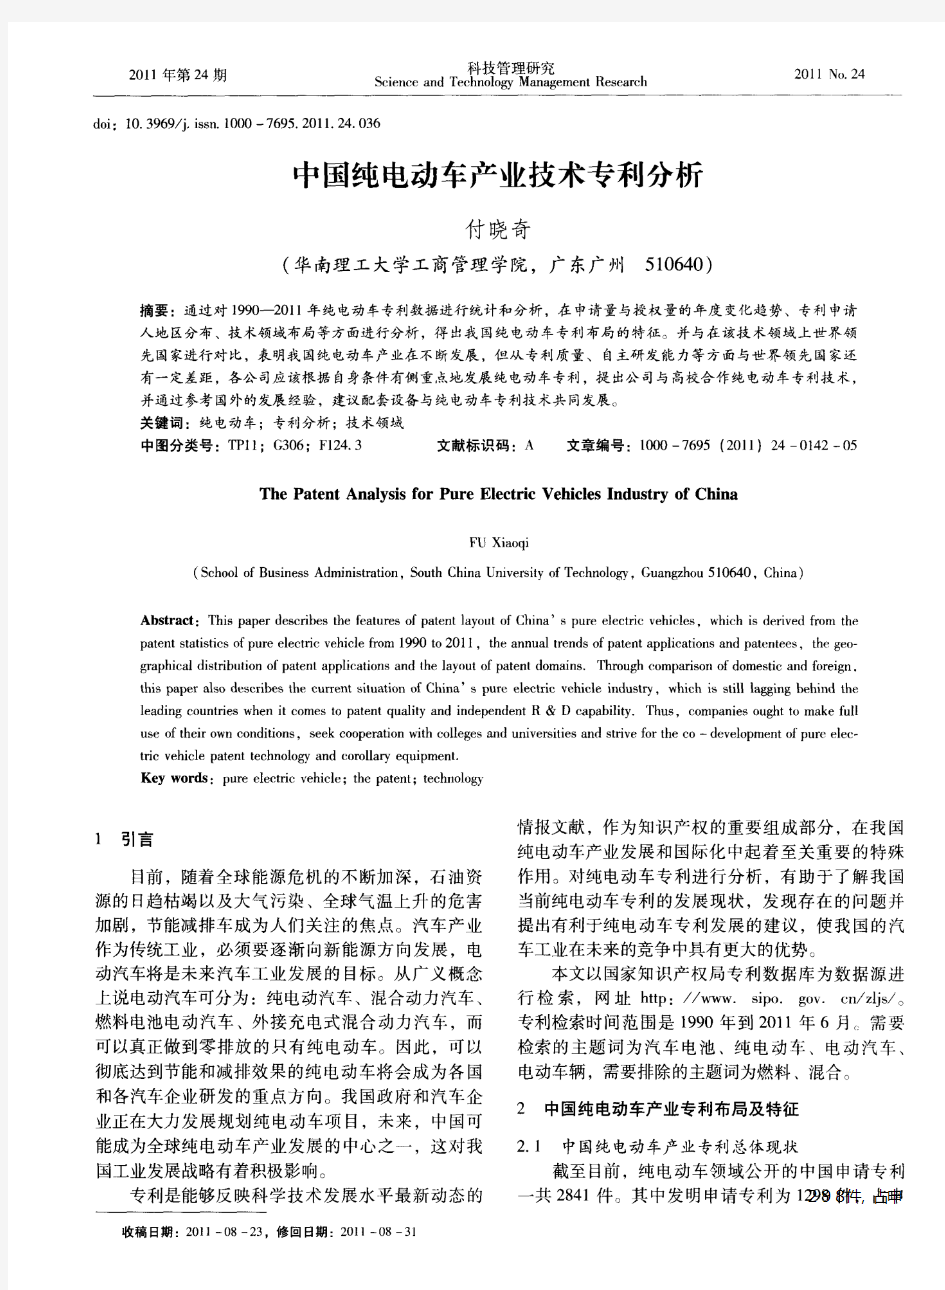 中国纯电动车产业技术专利分析